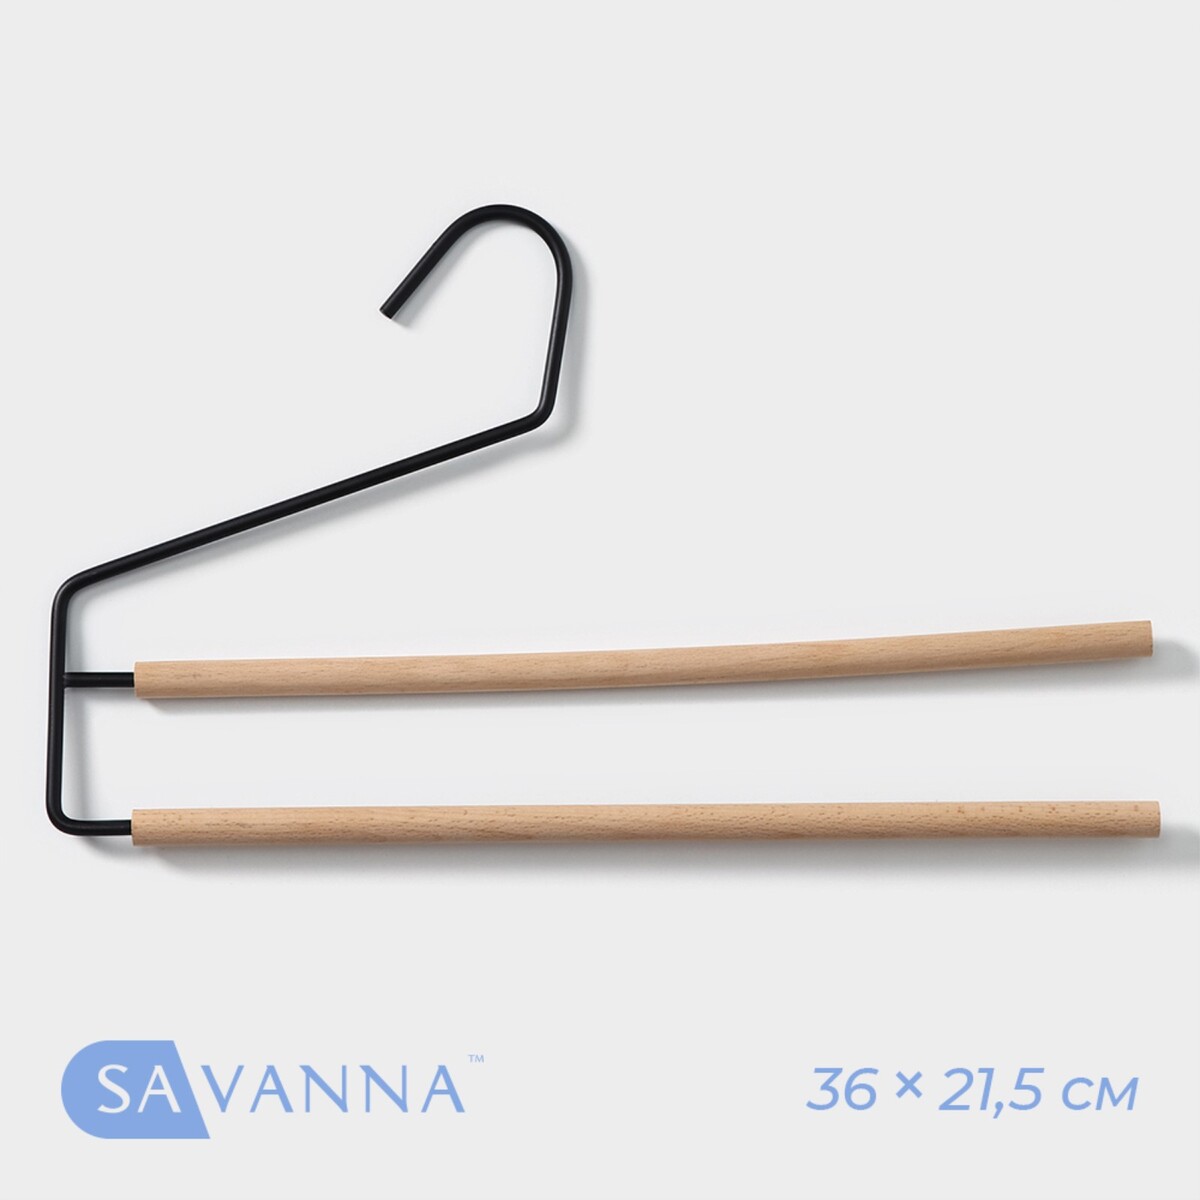  -       savanna wood, 36 21,5 1,1 ,  